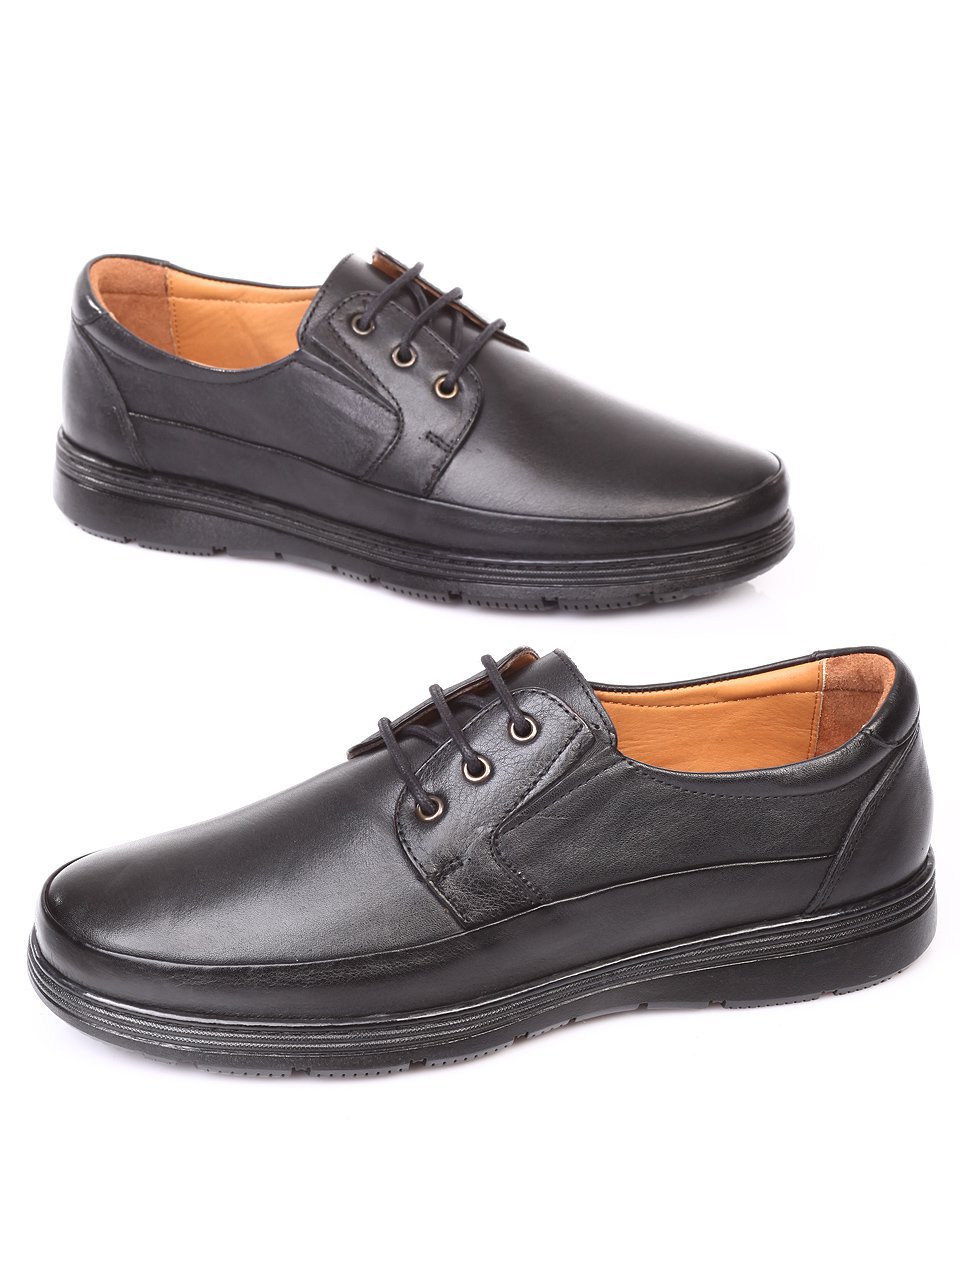 Спортно-елегантни мъжки обувки от естествена кожа 7AT-171119 black